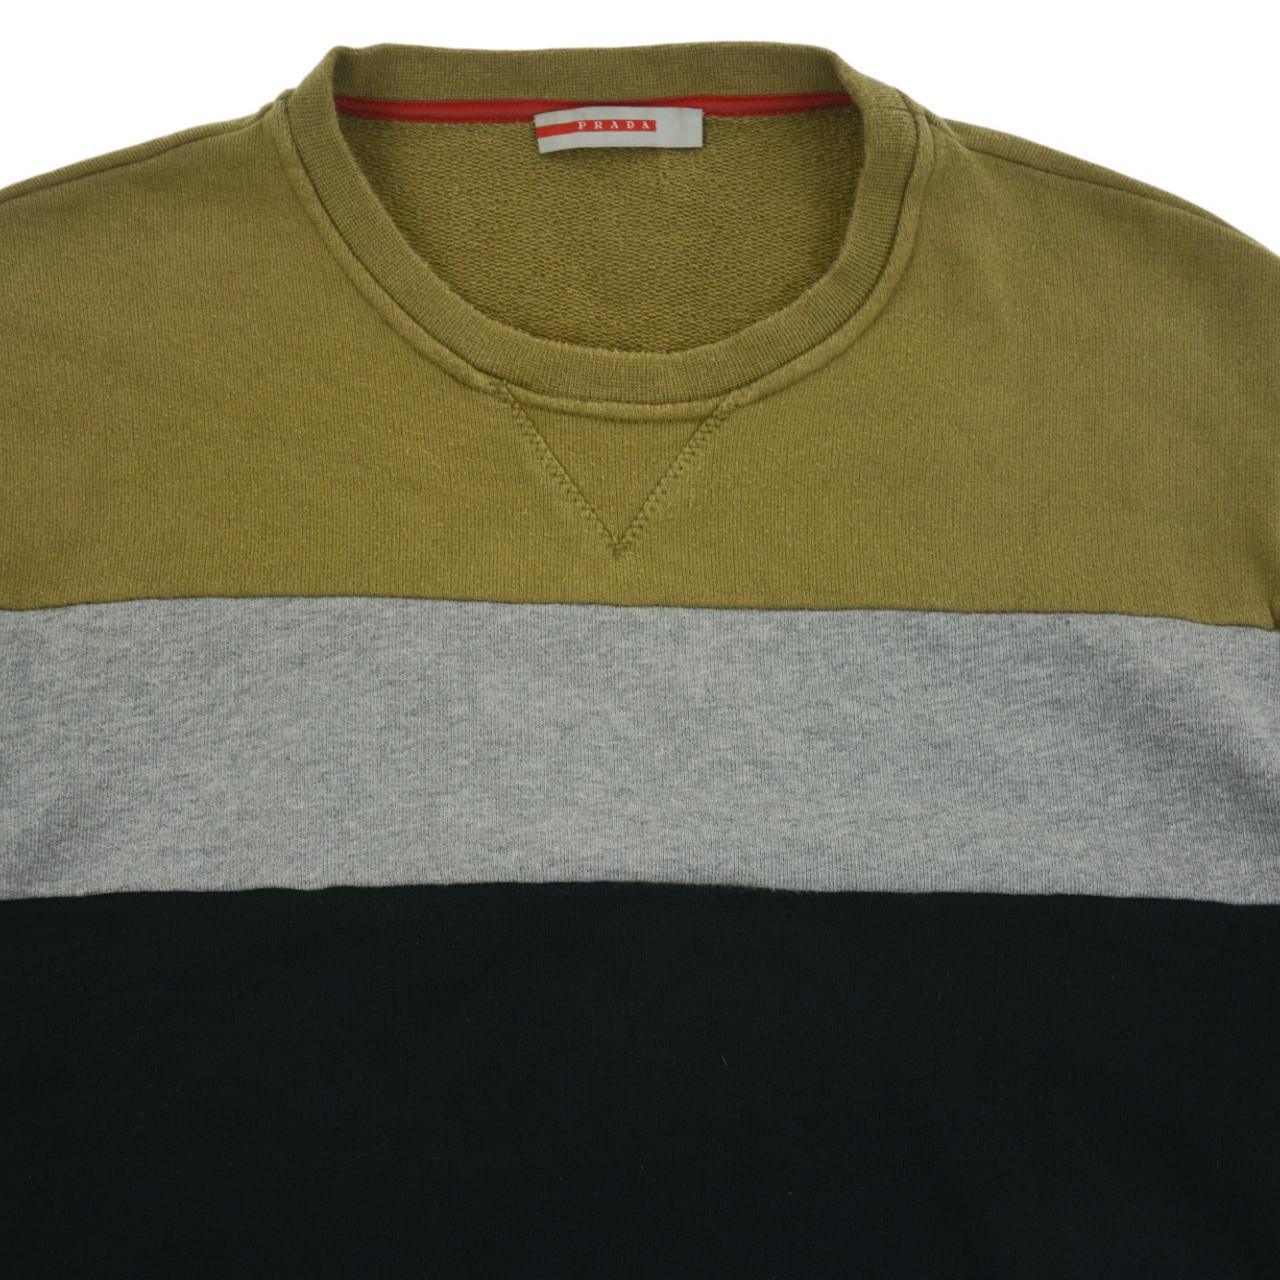 Vintage Prada Sport Sweatshirt Size S - Known Source